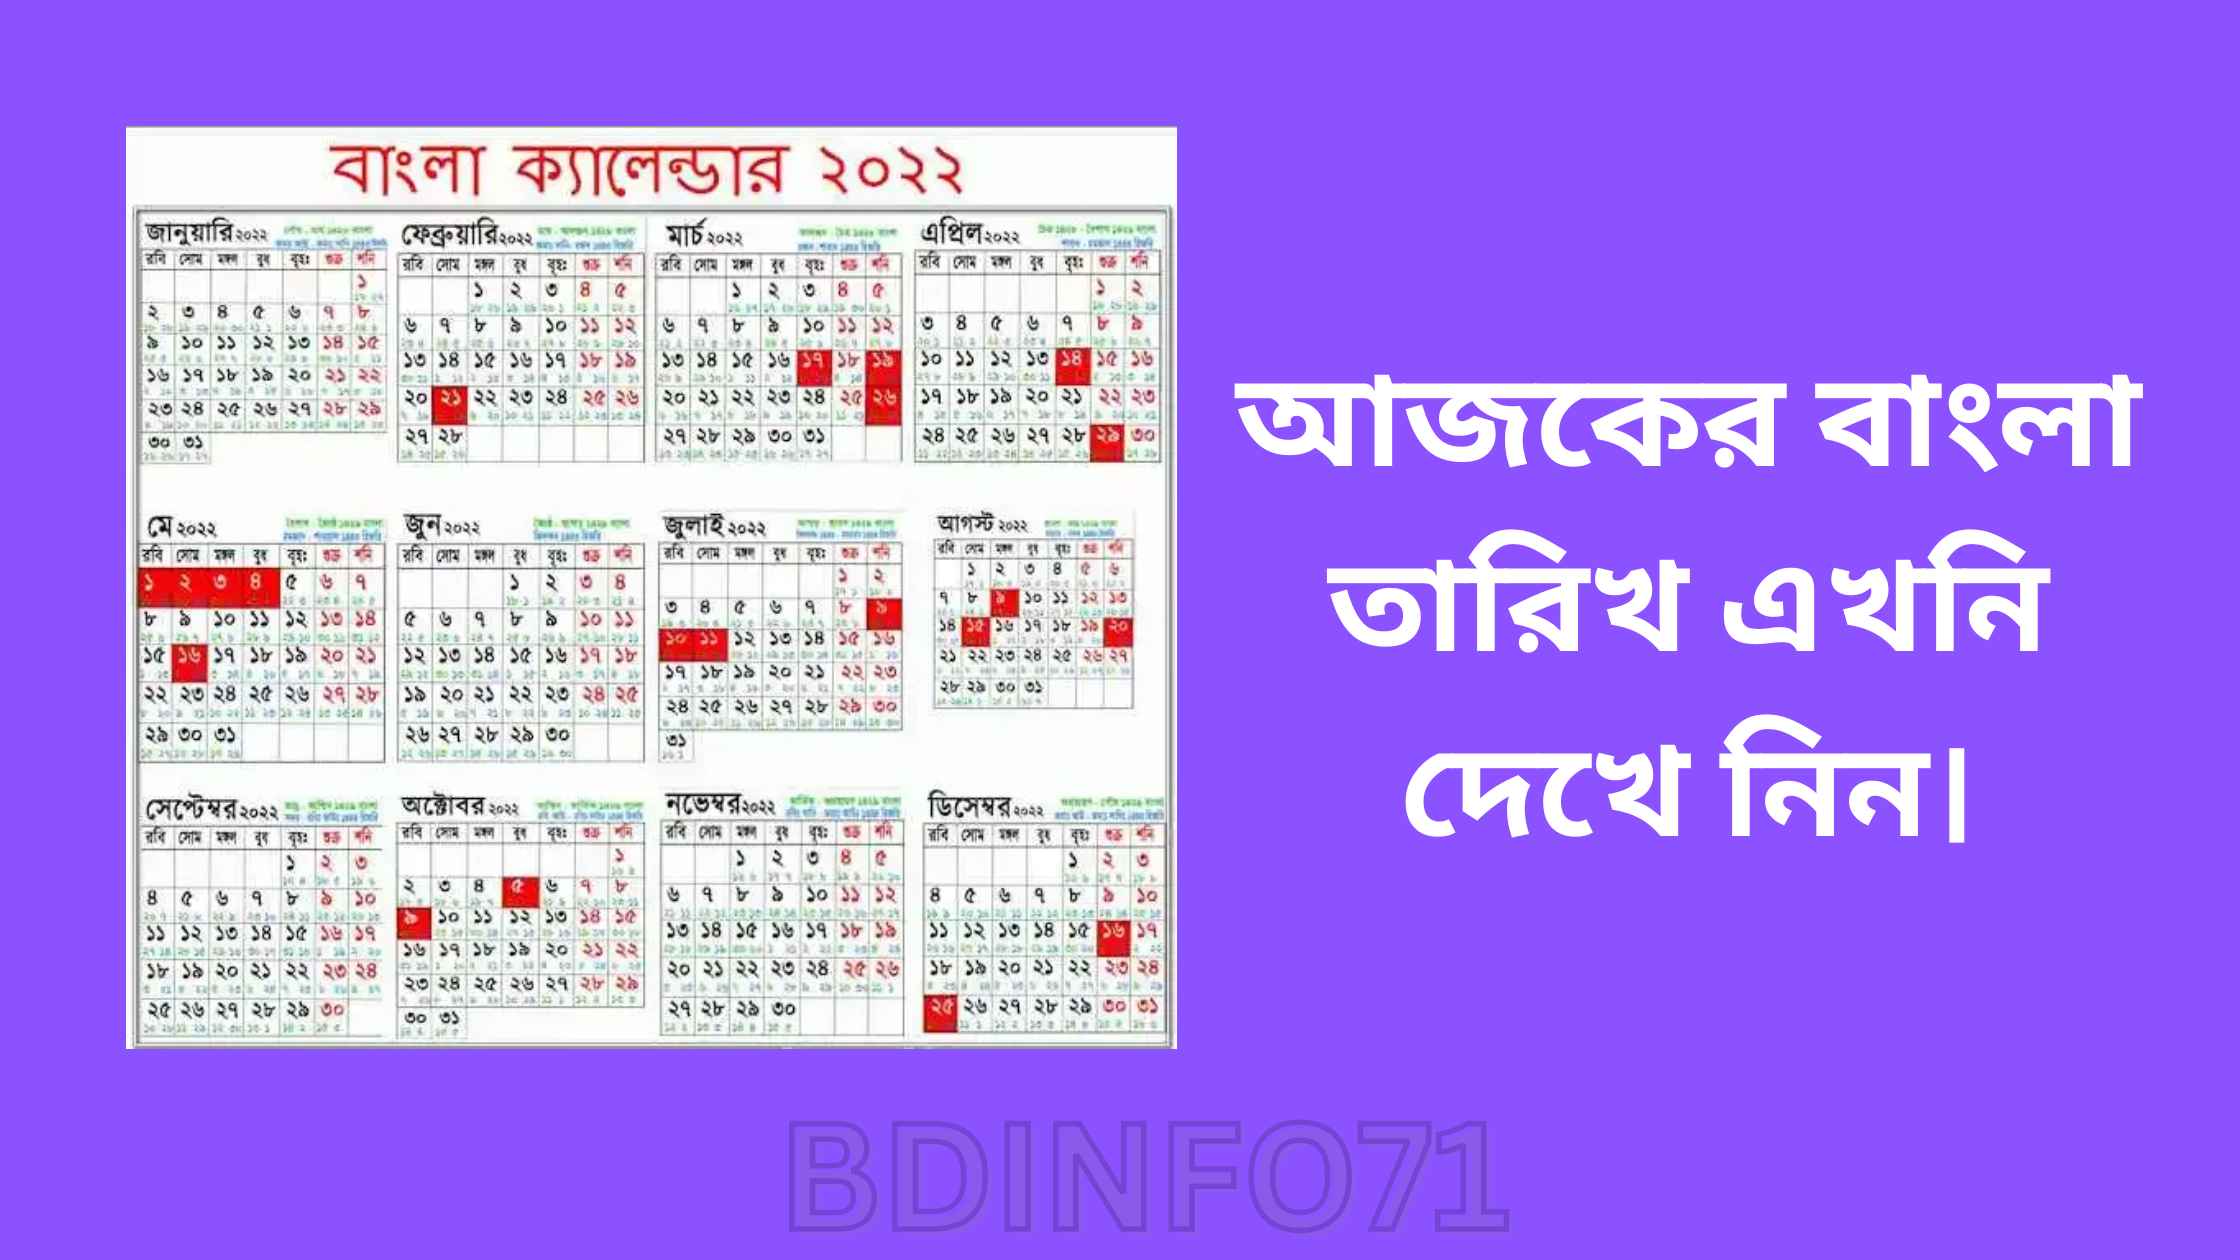 Today's Bangla Date 2022 Bengali Calendar 1428, Today Bangla Date In Bangladesh-bdinfo71.com